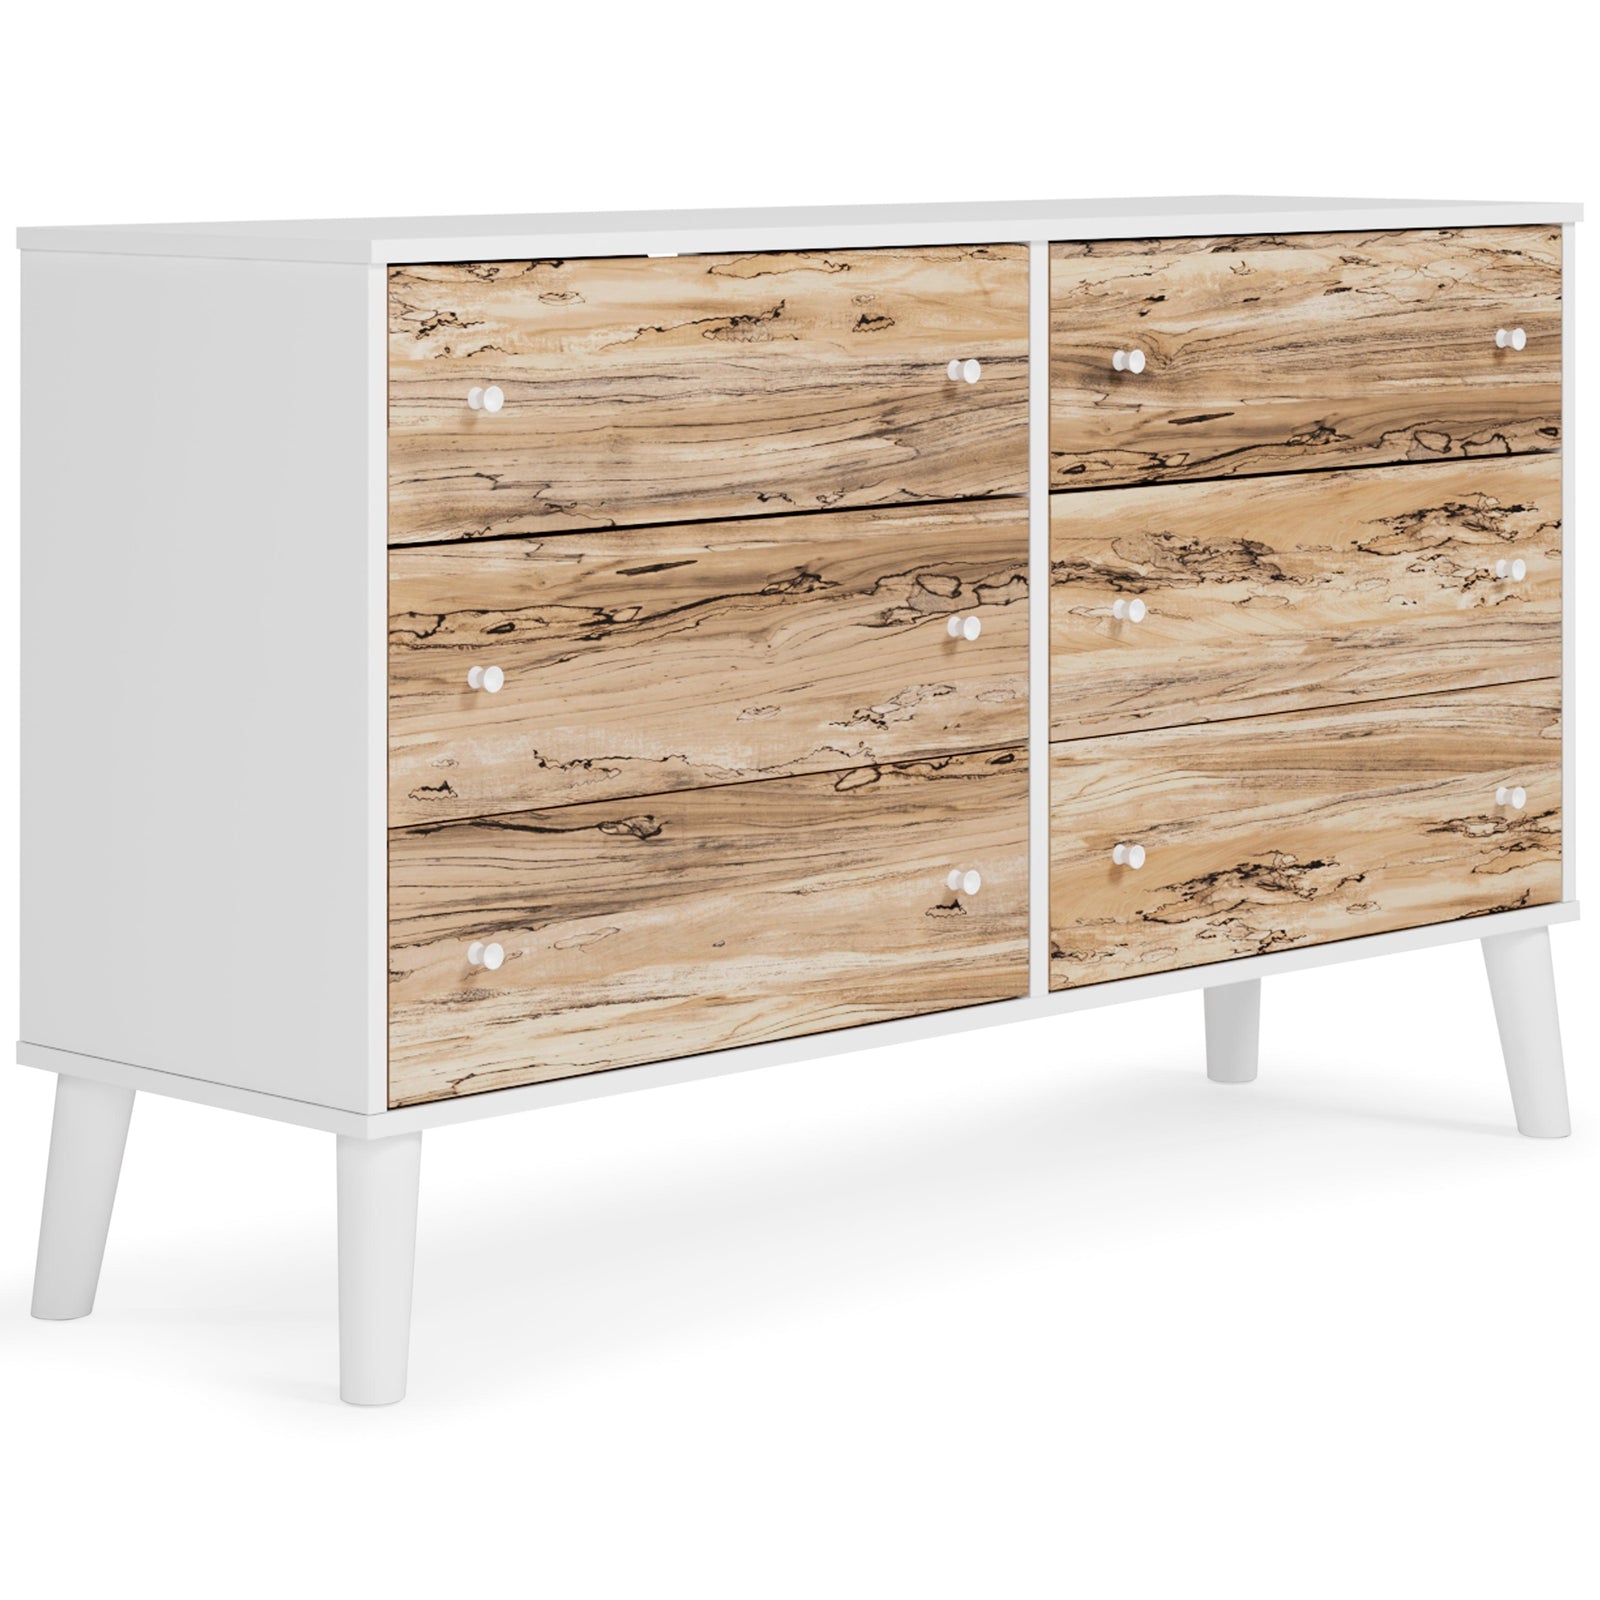 Piperton Two-tone Brown/white Dresser - Ella Furniture